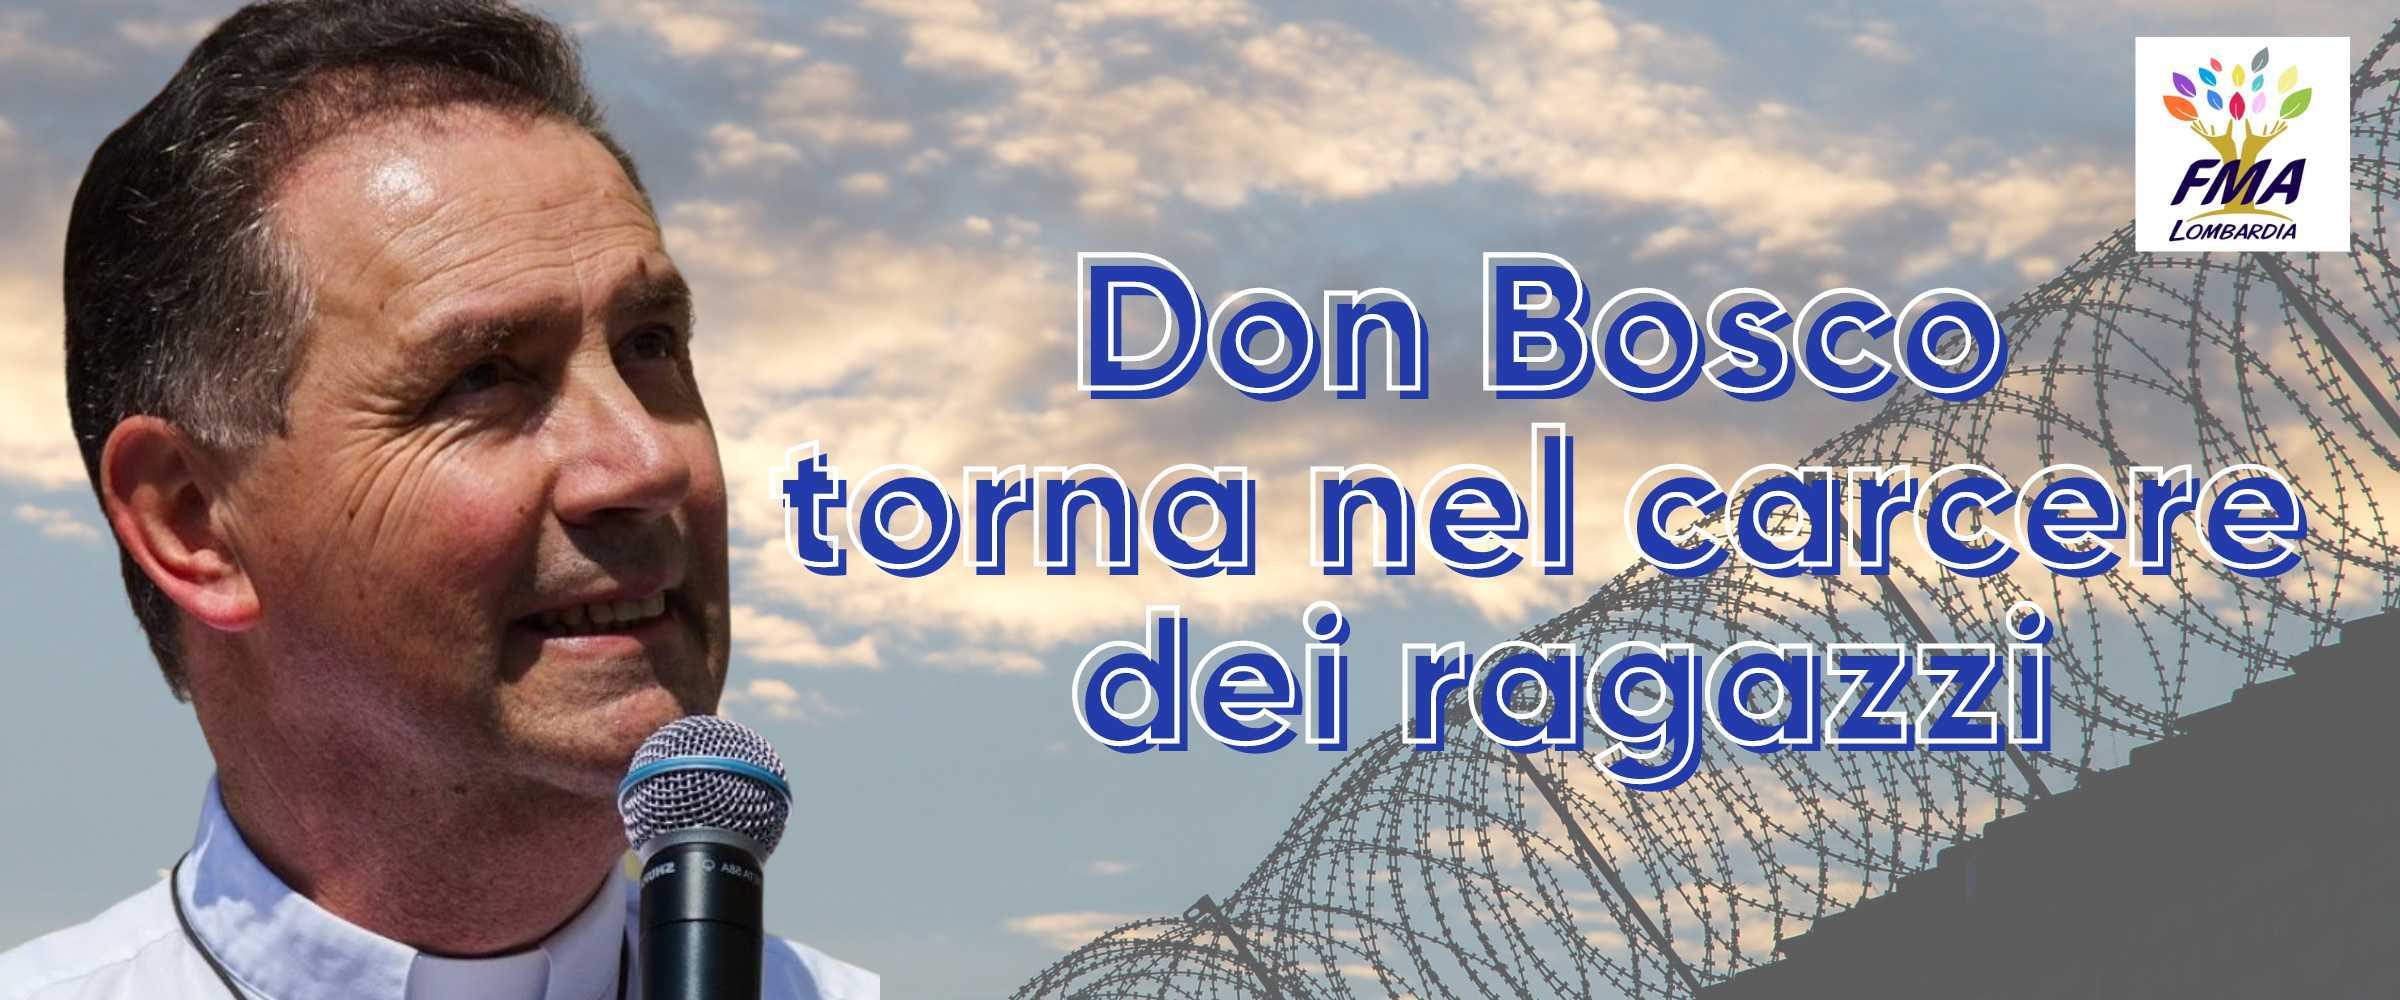 Don Bosco torna nel carcere dei ragazzi